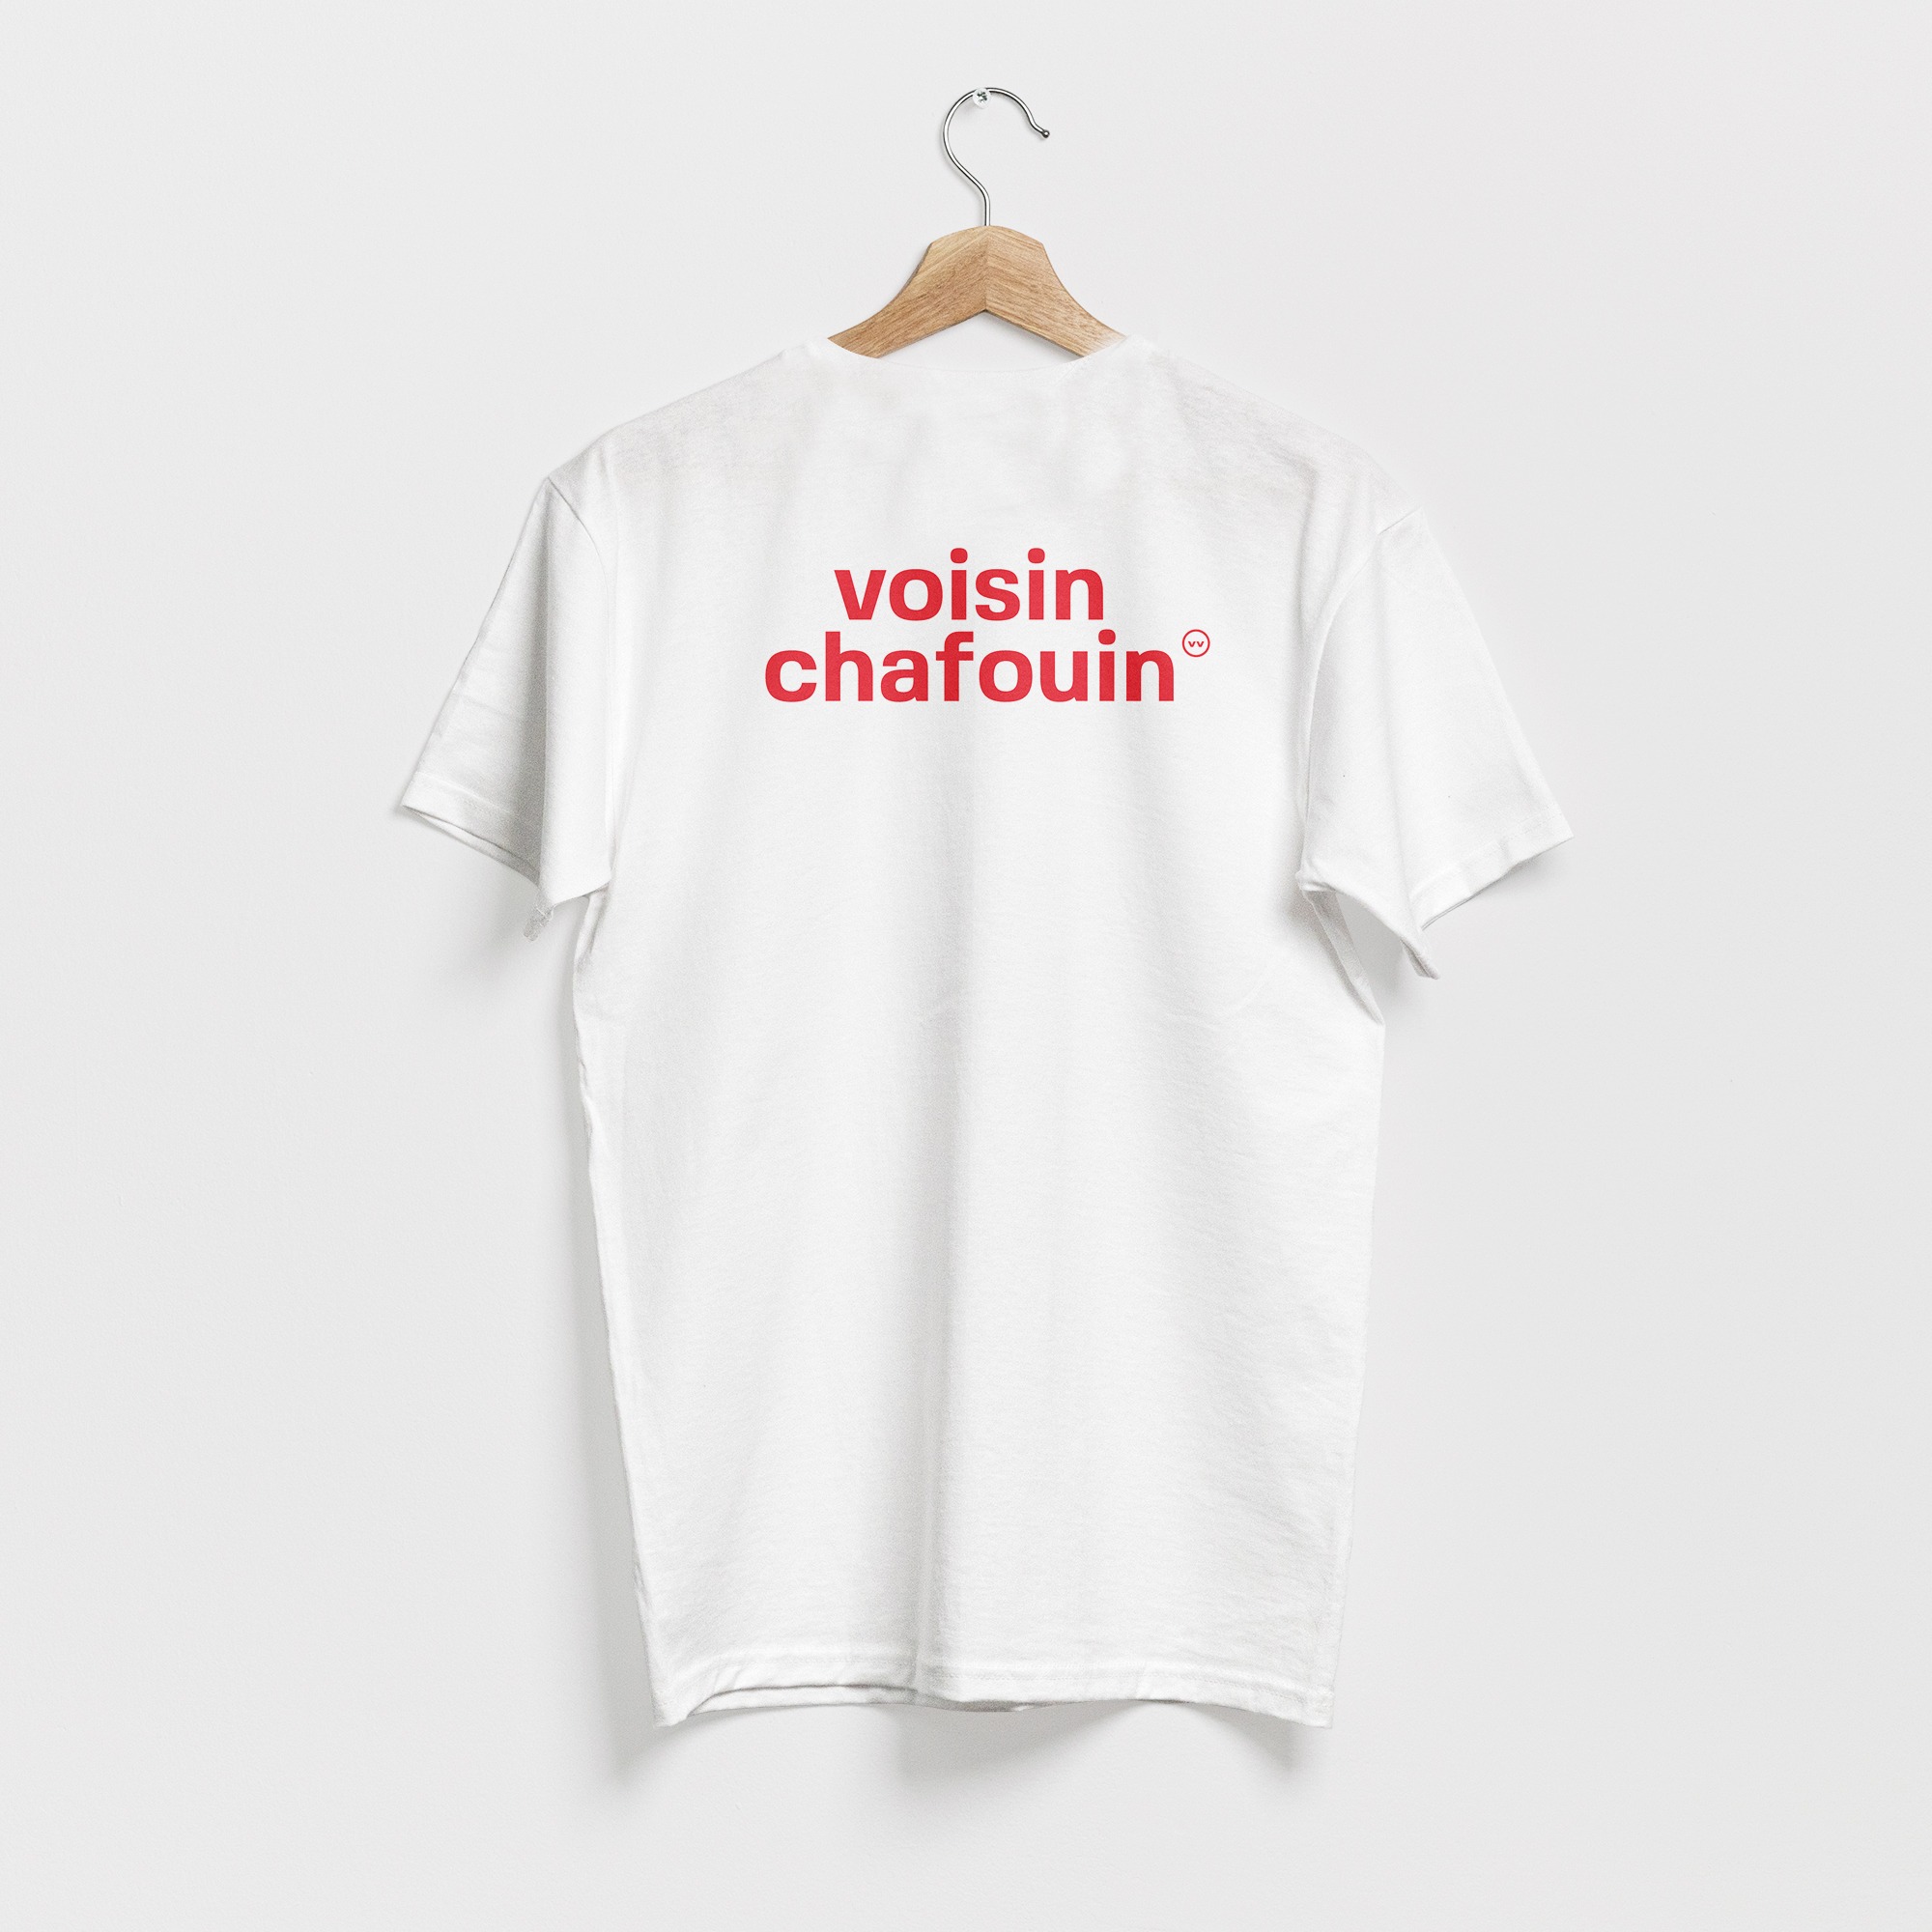 T-shirt blanc, avec le texte voisin chafouin en rouge, de vilains-voisins imprimerie et studio de design graphique à Rethel, dans les Ardennes.